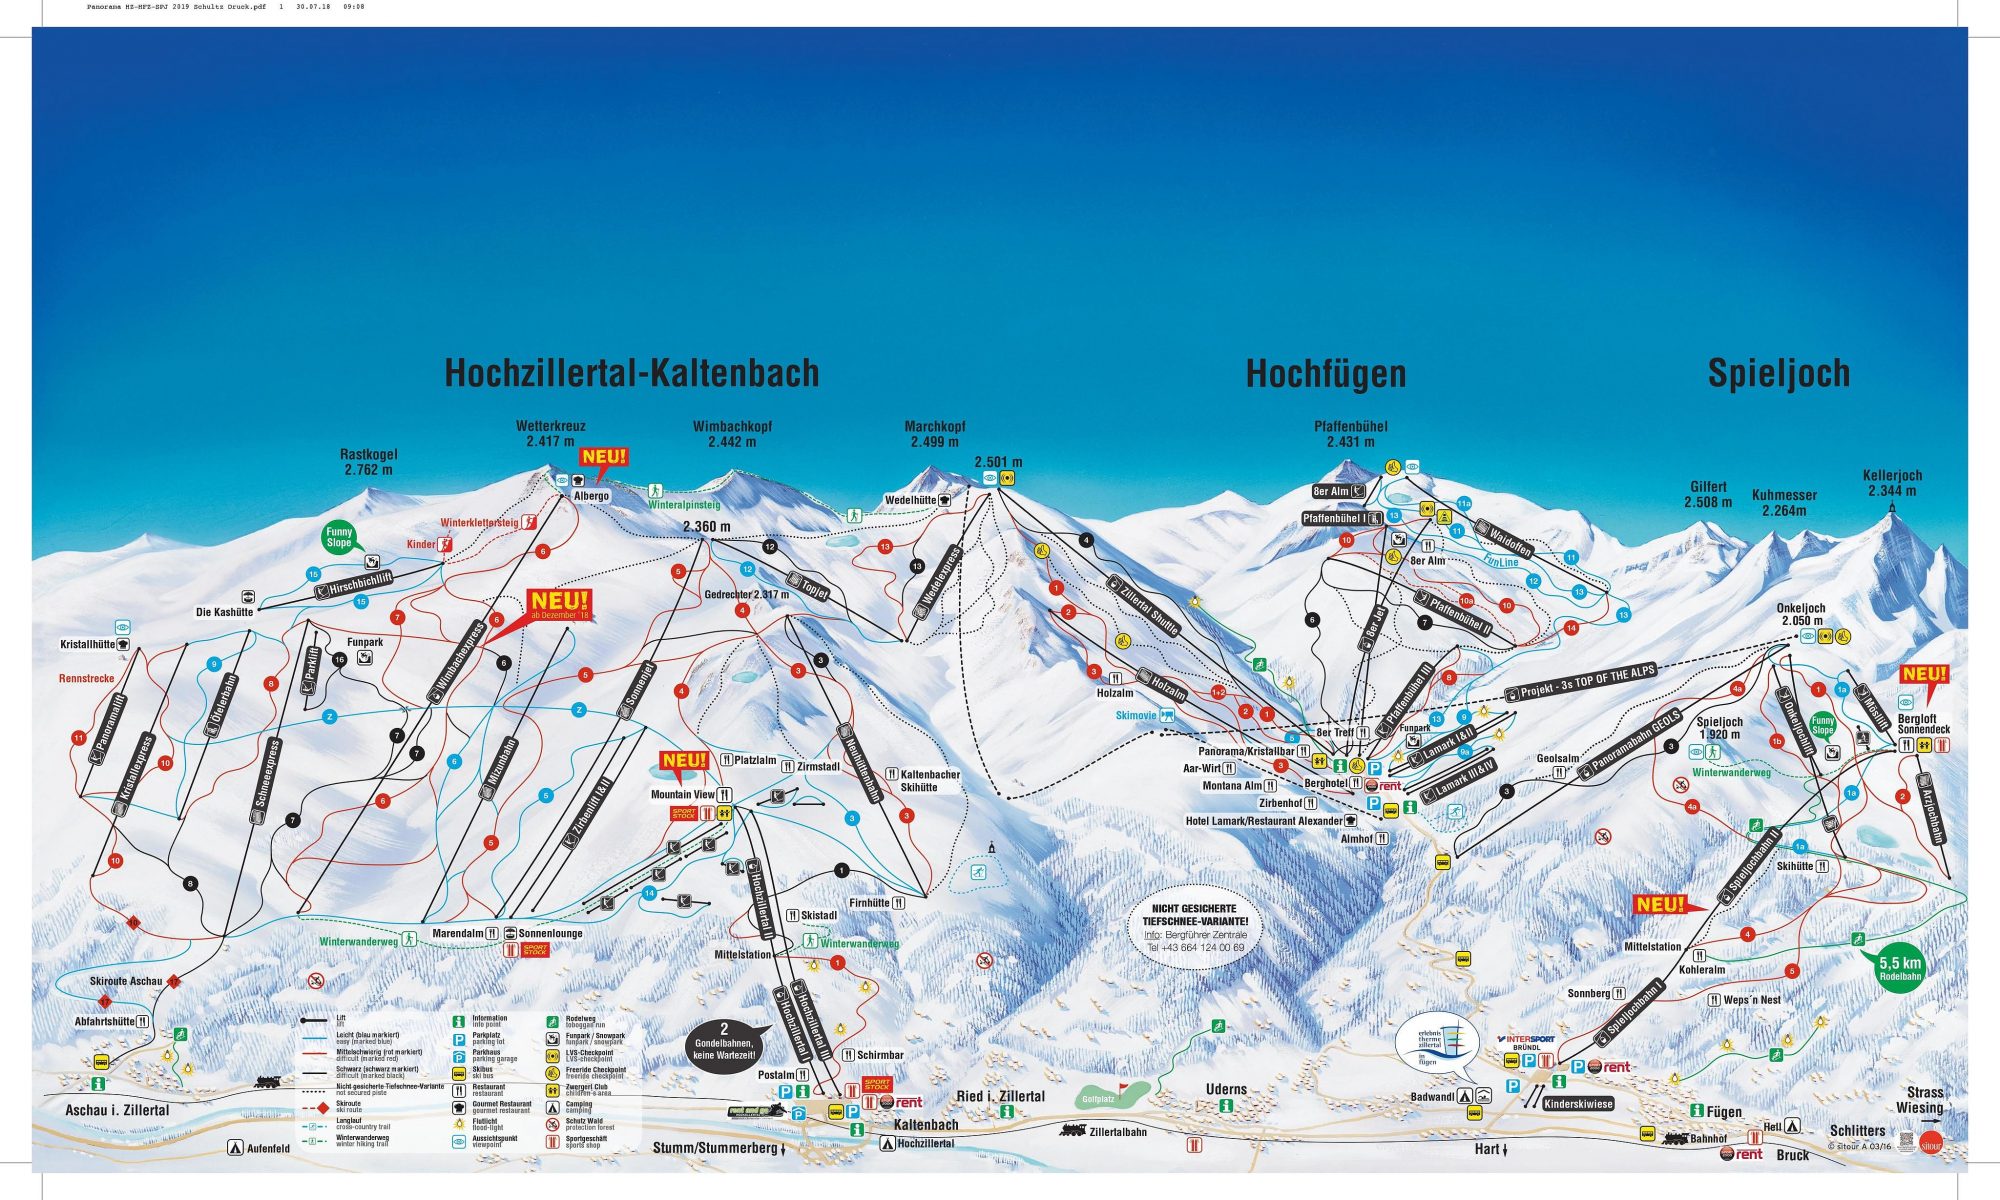 Hochzillertal ski map. A Gondola Accident happened in Hochzillertal today.